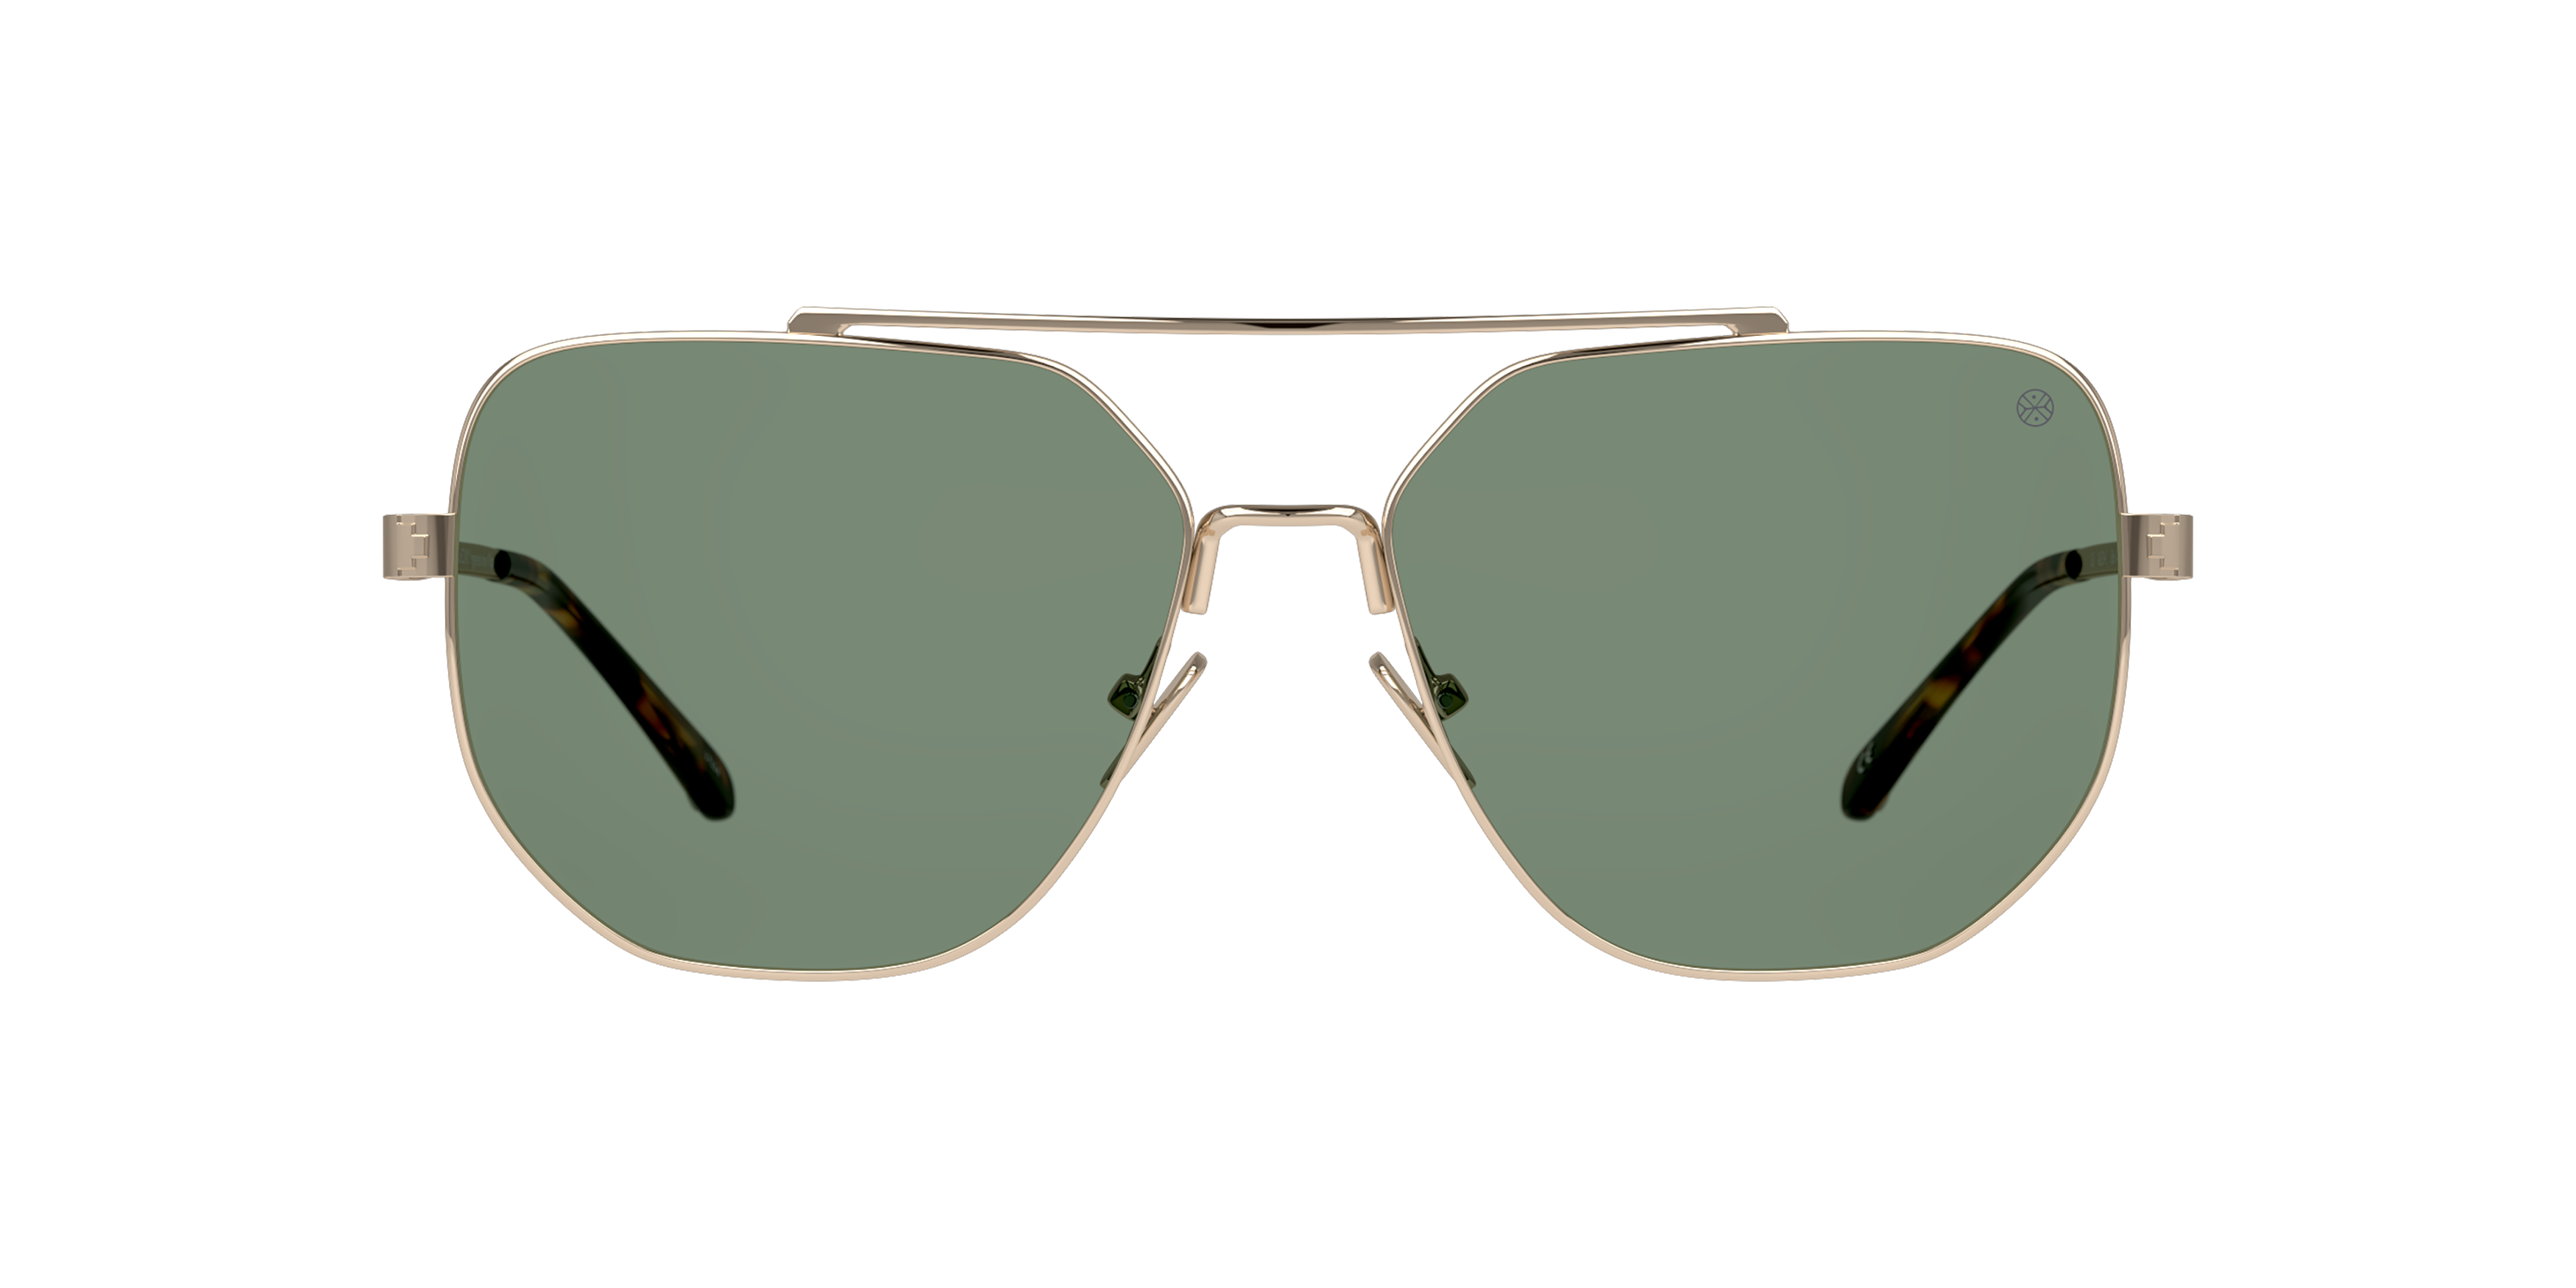 [products.image.front] Karun KA US0143 Sunglasses